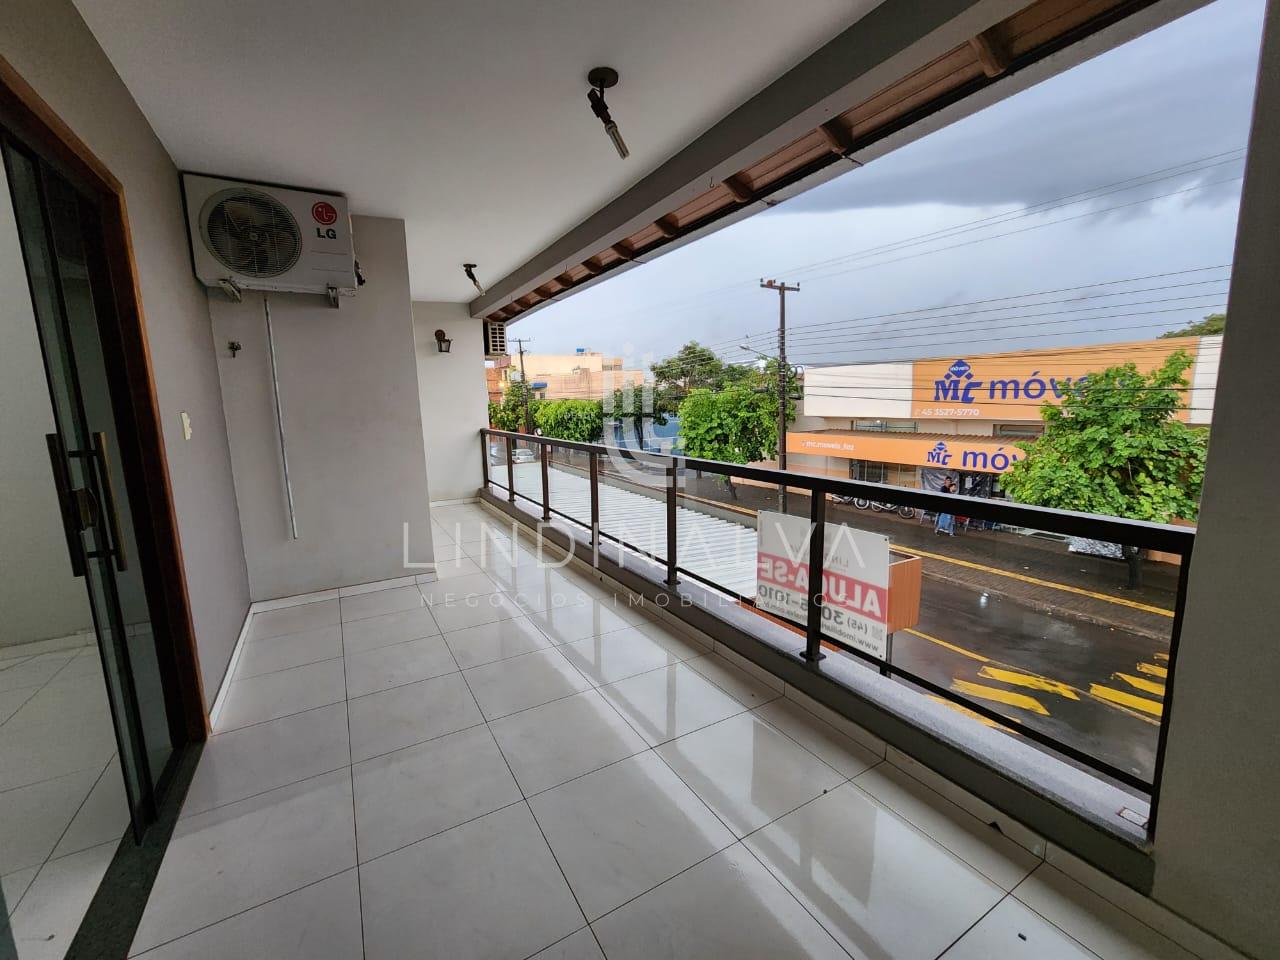 Apartamento com 4 Dormitórios para Locação,375.00 M , Foz do Iguacu - Pr | LINDINALVA ASSESSORIA | Portal OBusca